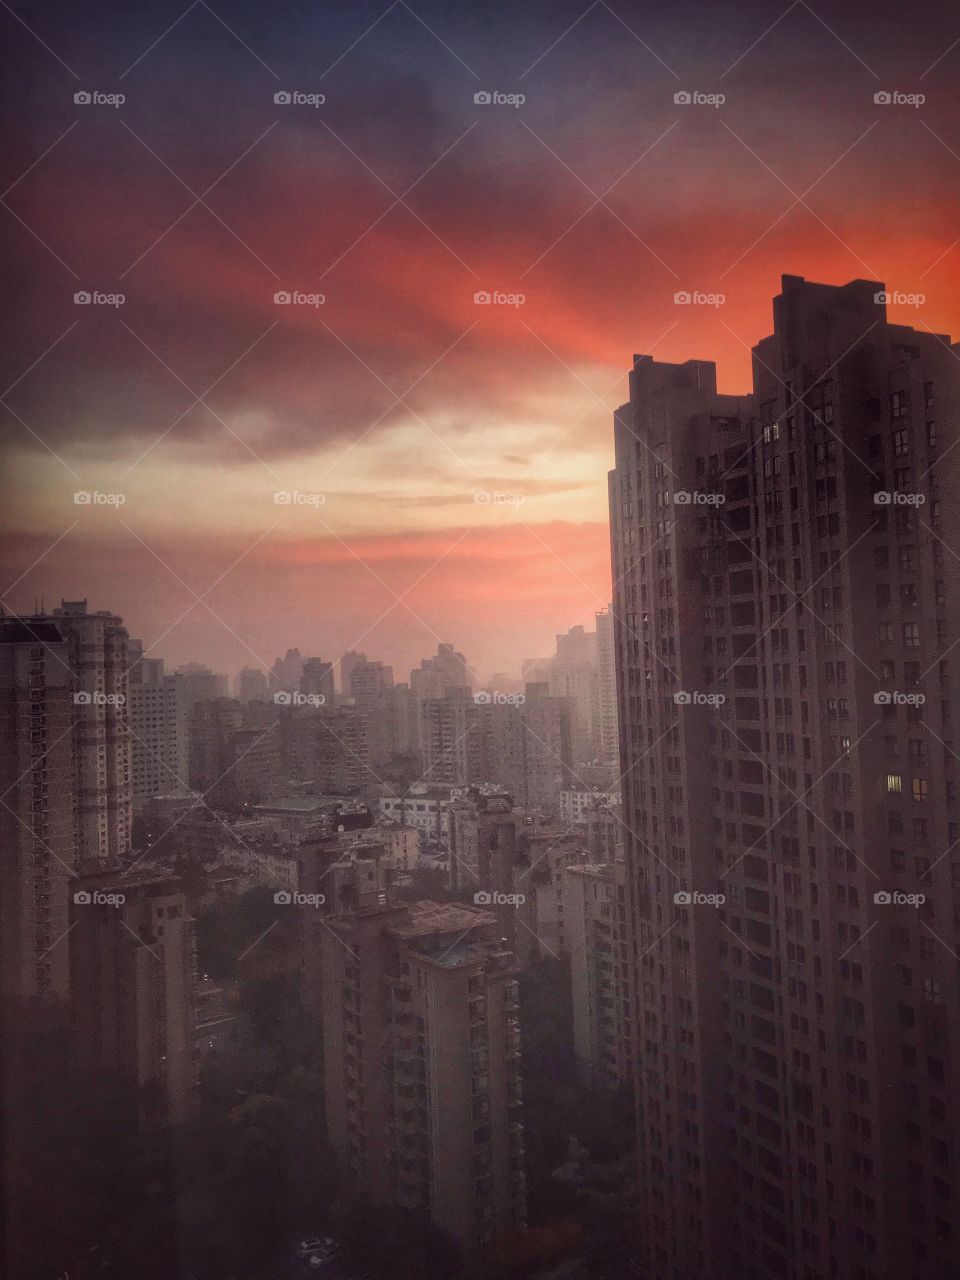 上海日出 -  sunrise over Shanghai... November morning sky lit with colors as the sun is coming up